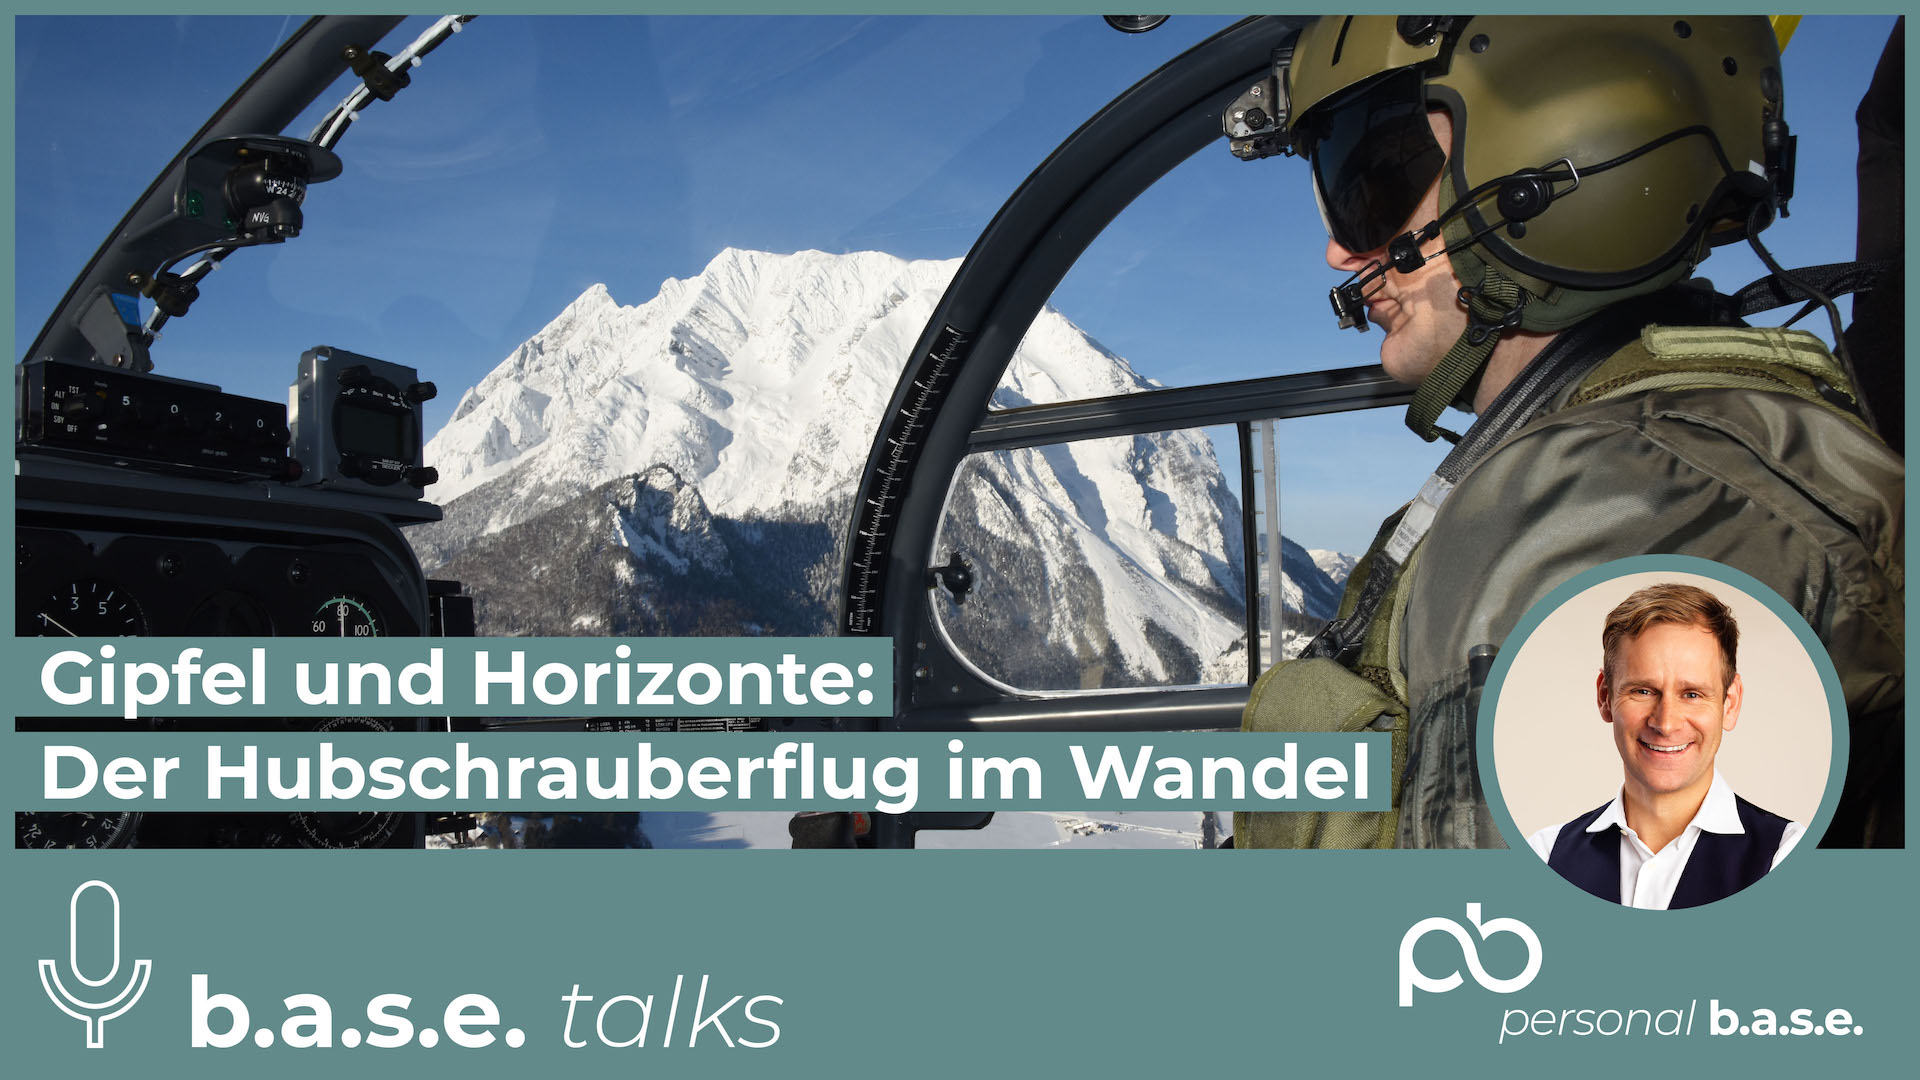 #67 Gipfel und Horizonte: Der Hubschrauberflug im Wandel - Obstlt Udo Koller | b.a.s.e. talks